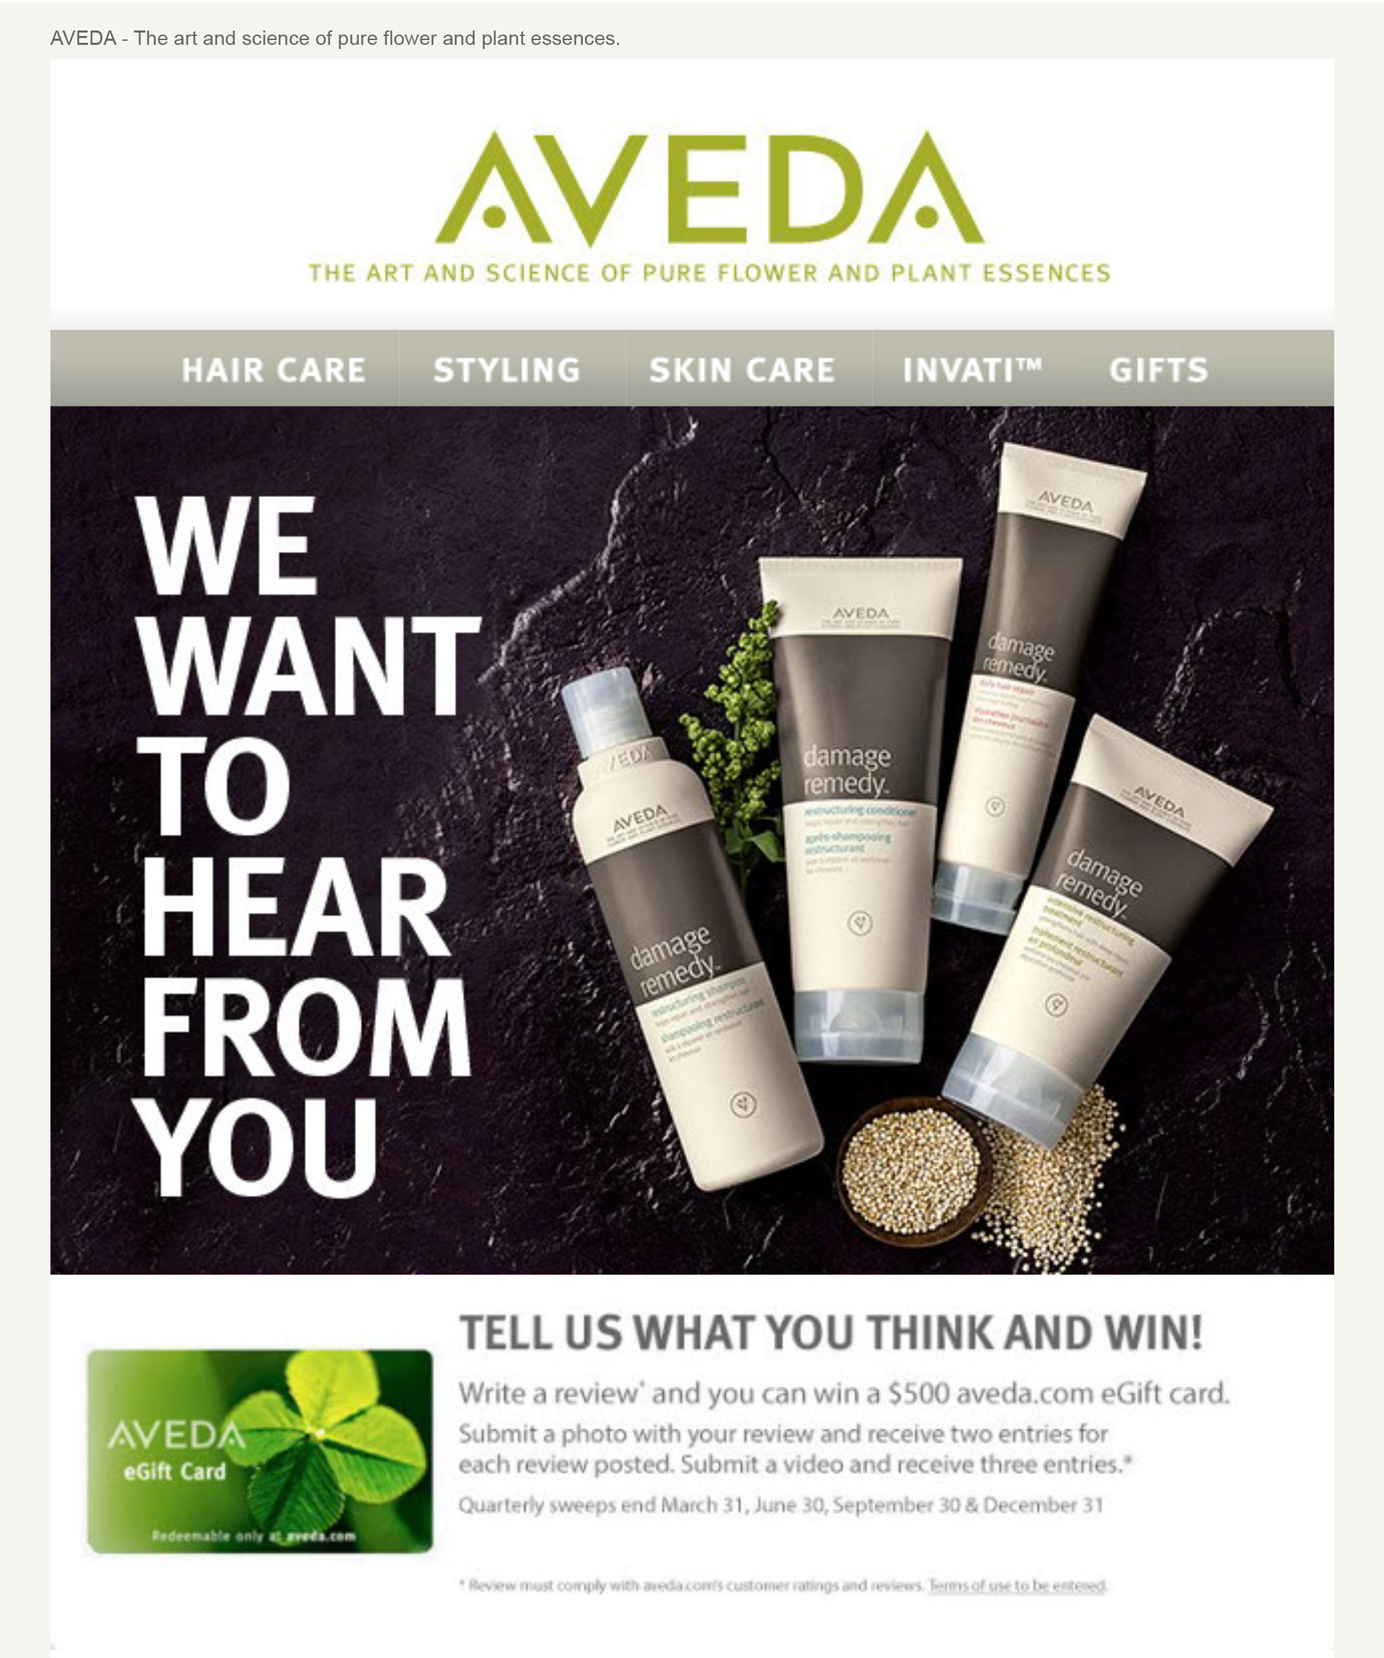 Скриншот электронного письма от Aveda.com с просьбой написать обзор продукта